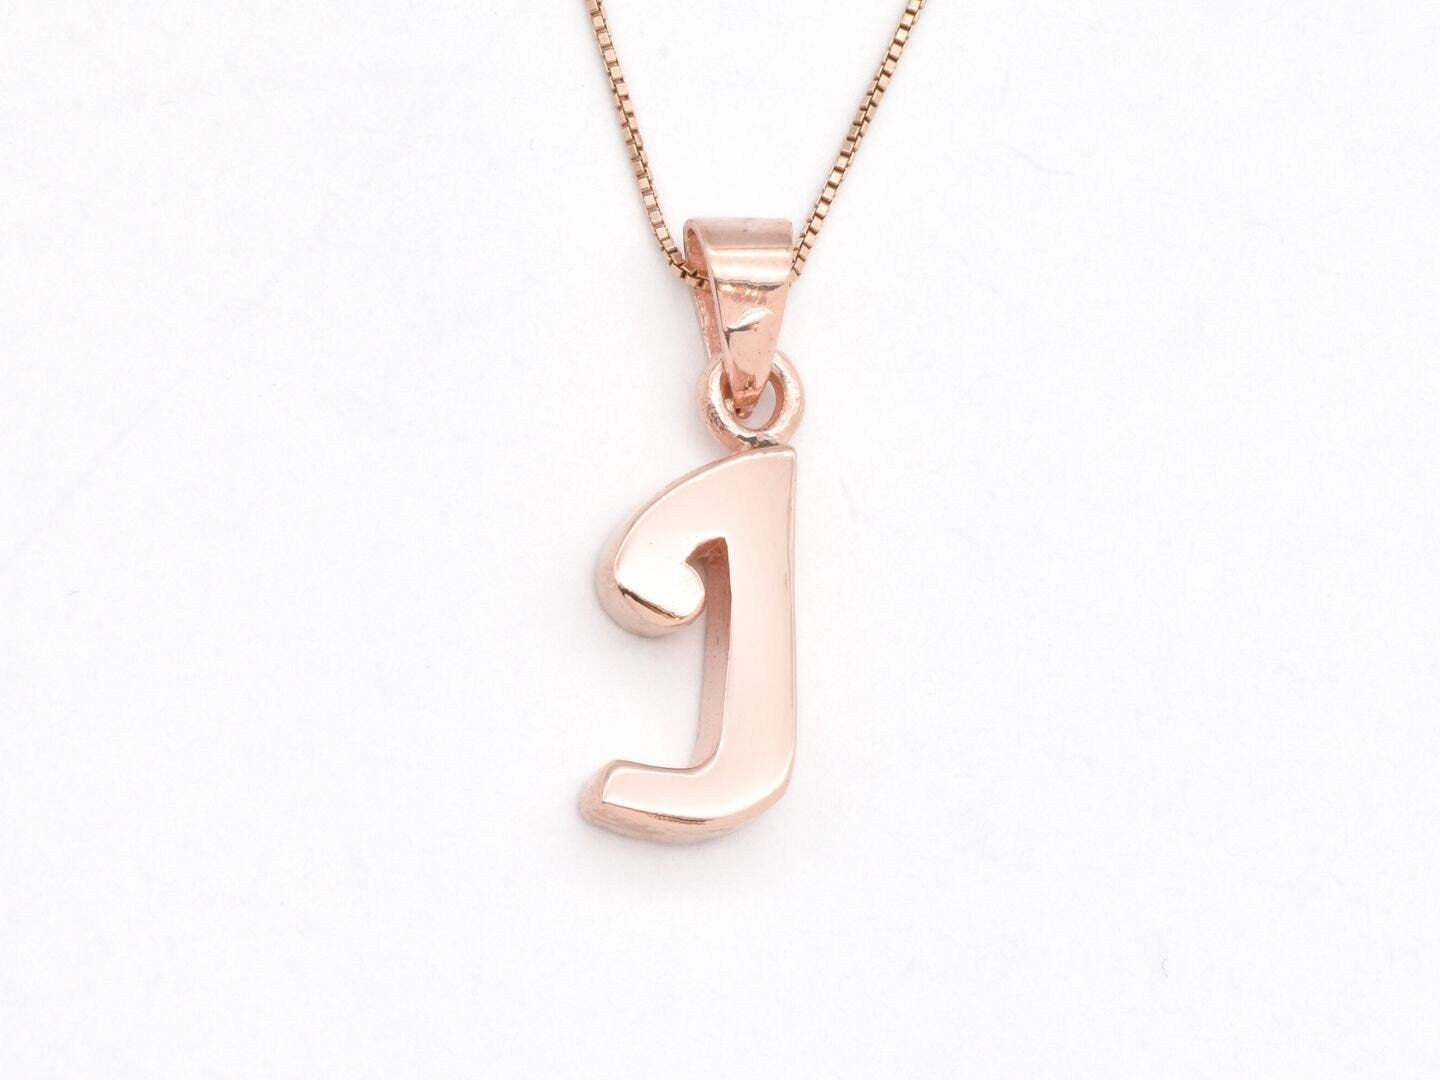 Gold Letter J Pendant - Alphabet Letter Necklace, Big Letter J Pendant